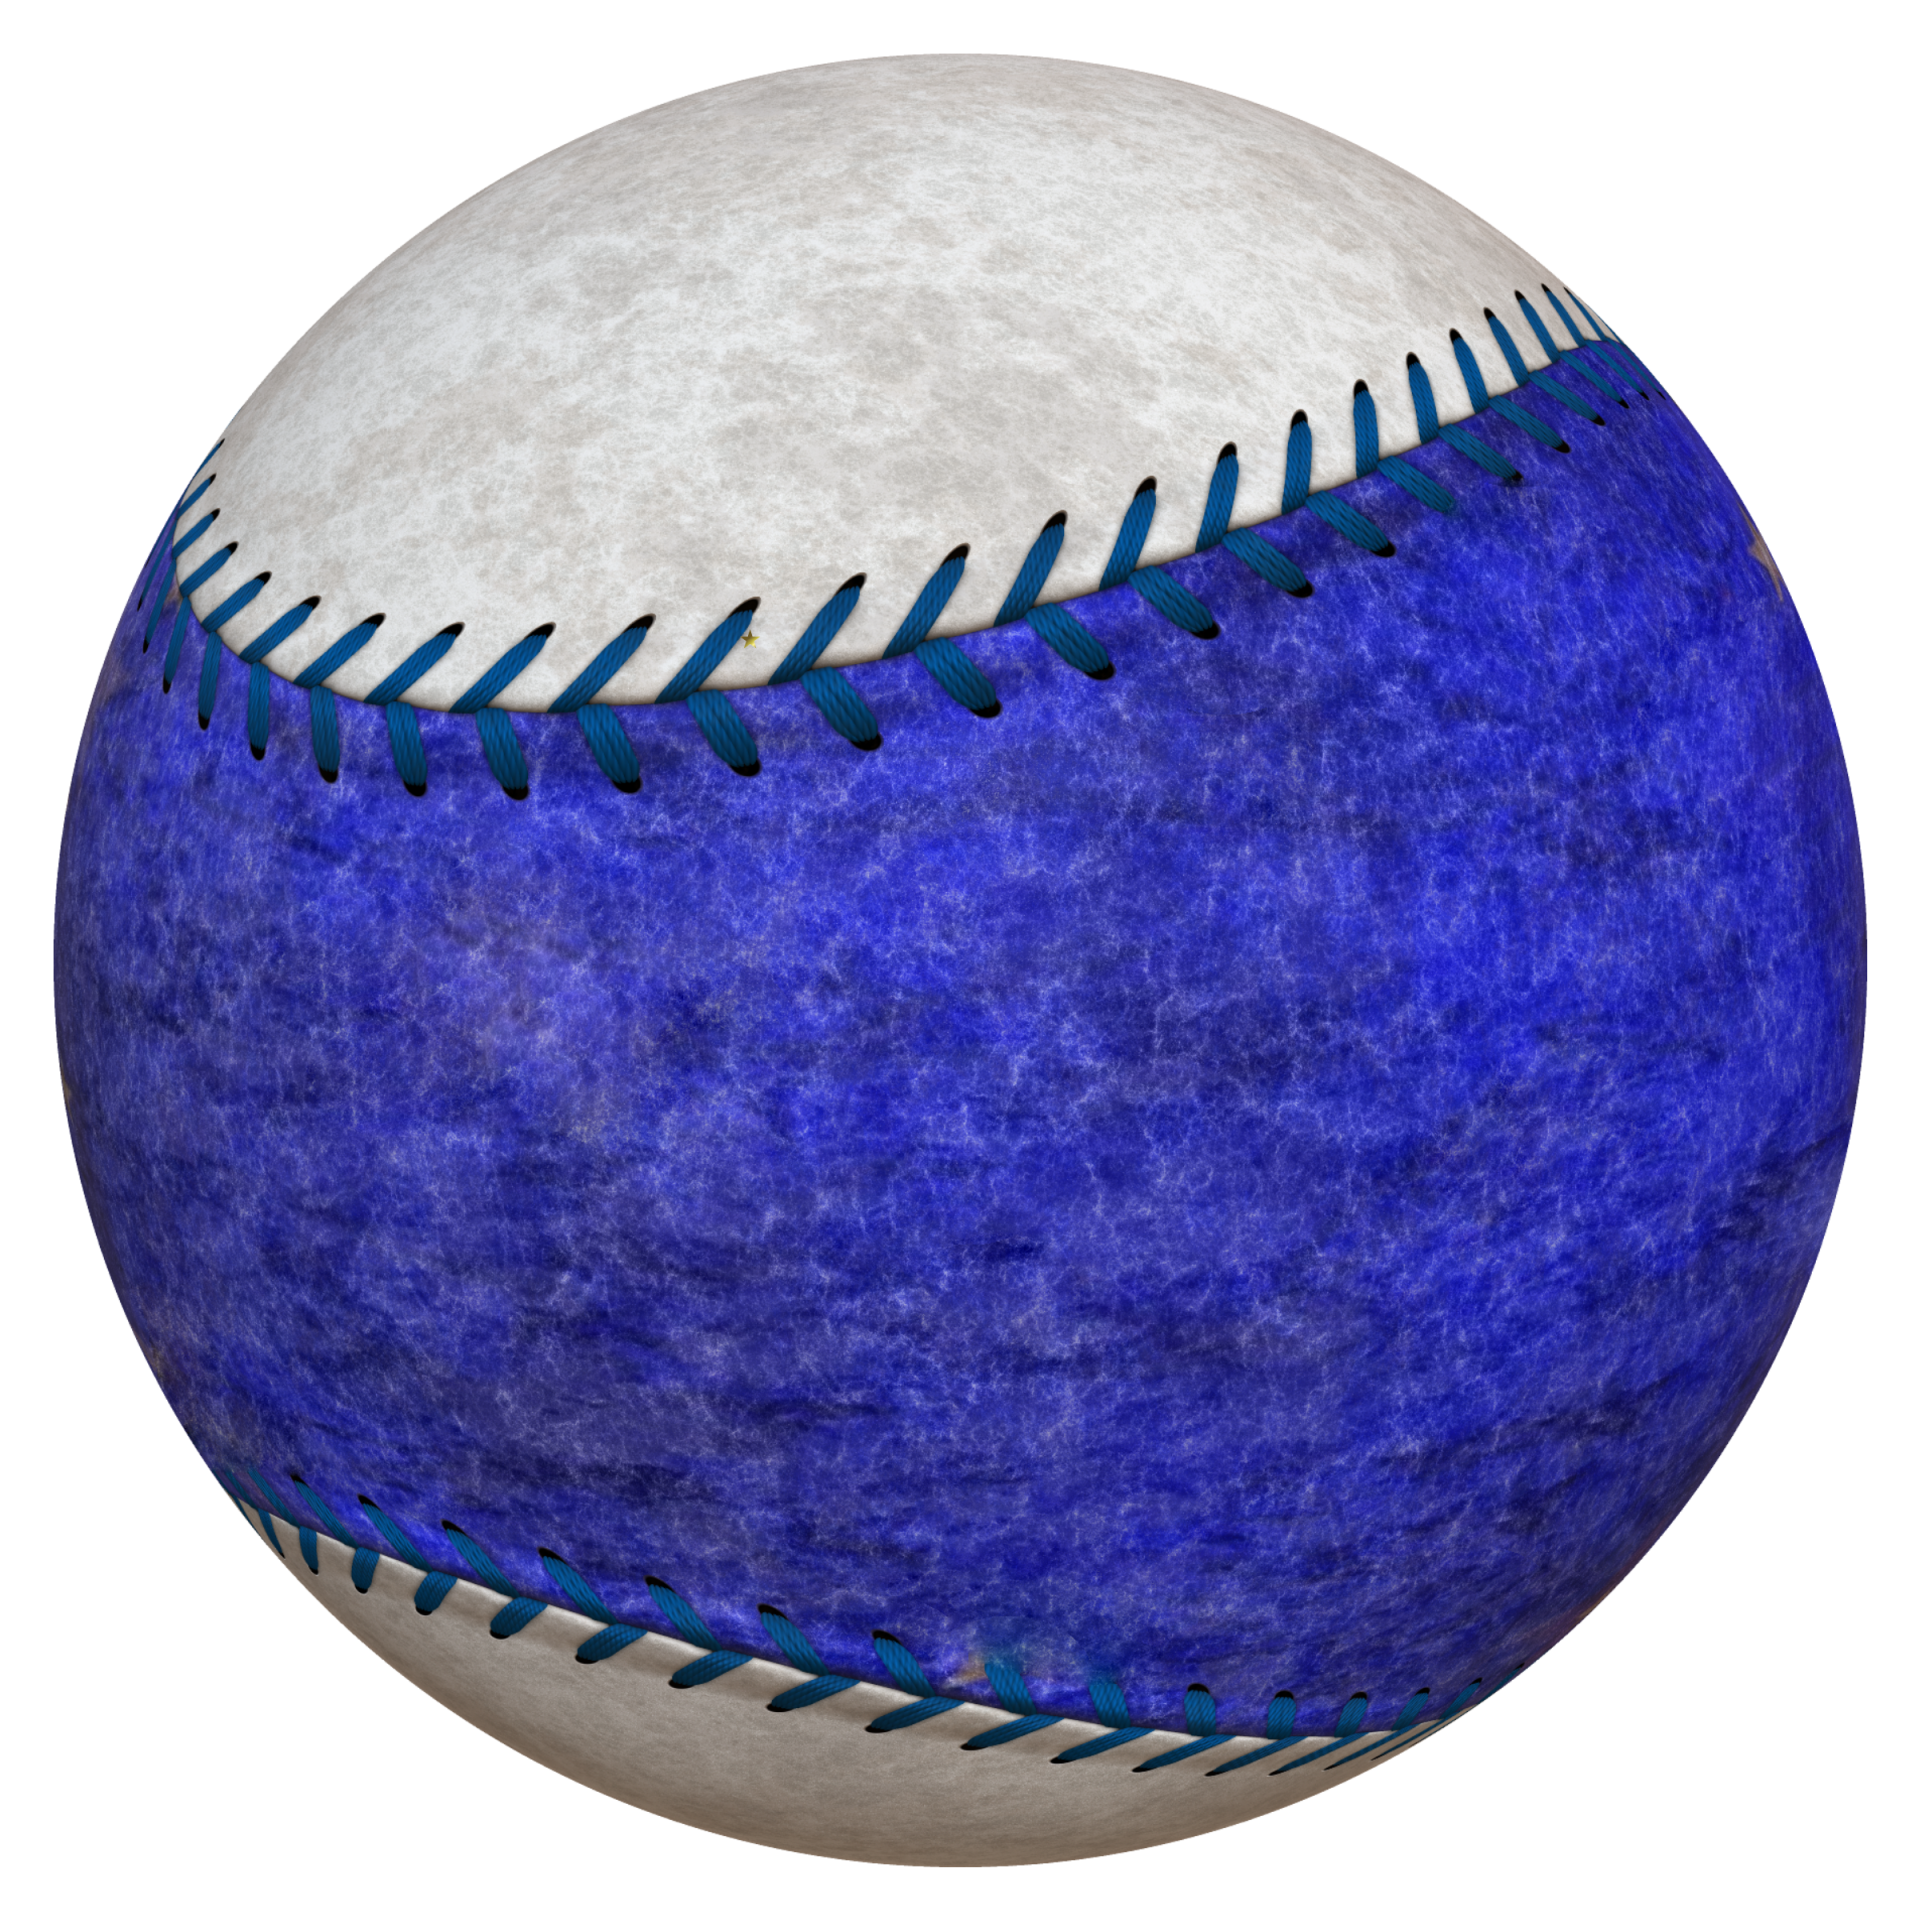 Baseball Ball - 1